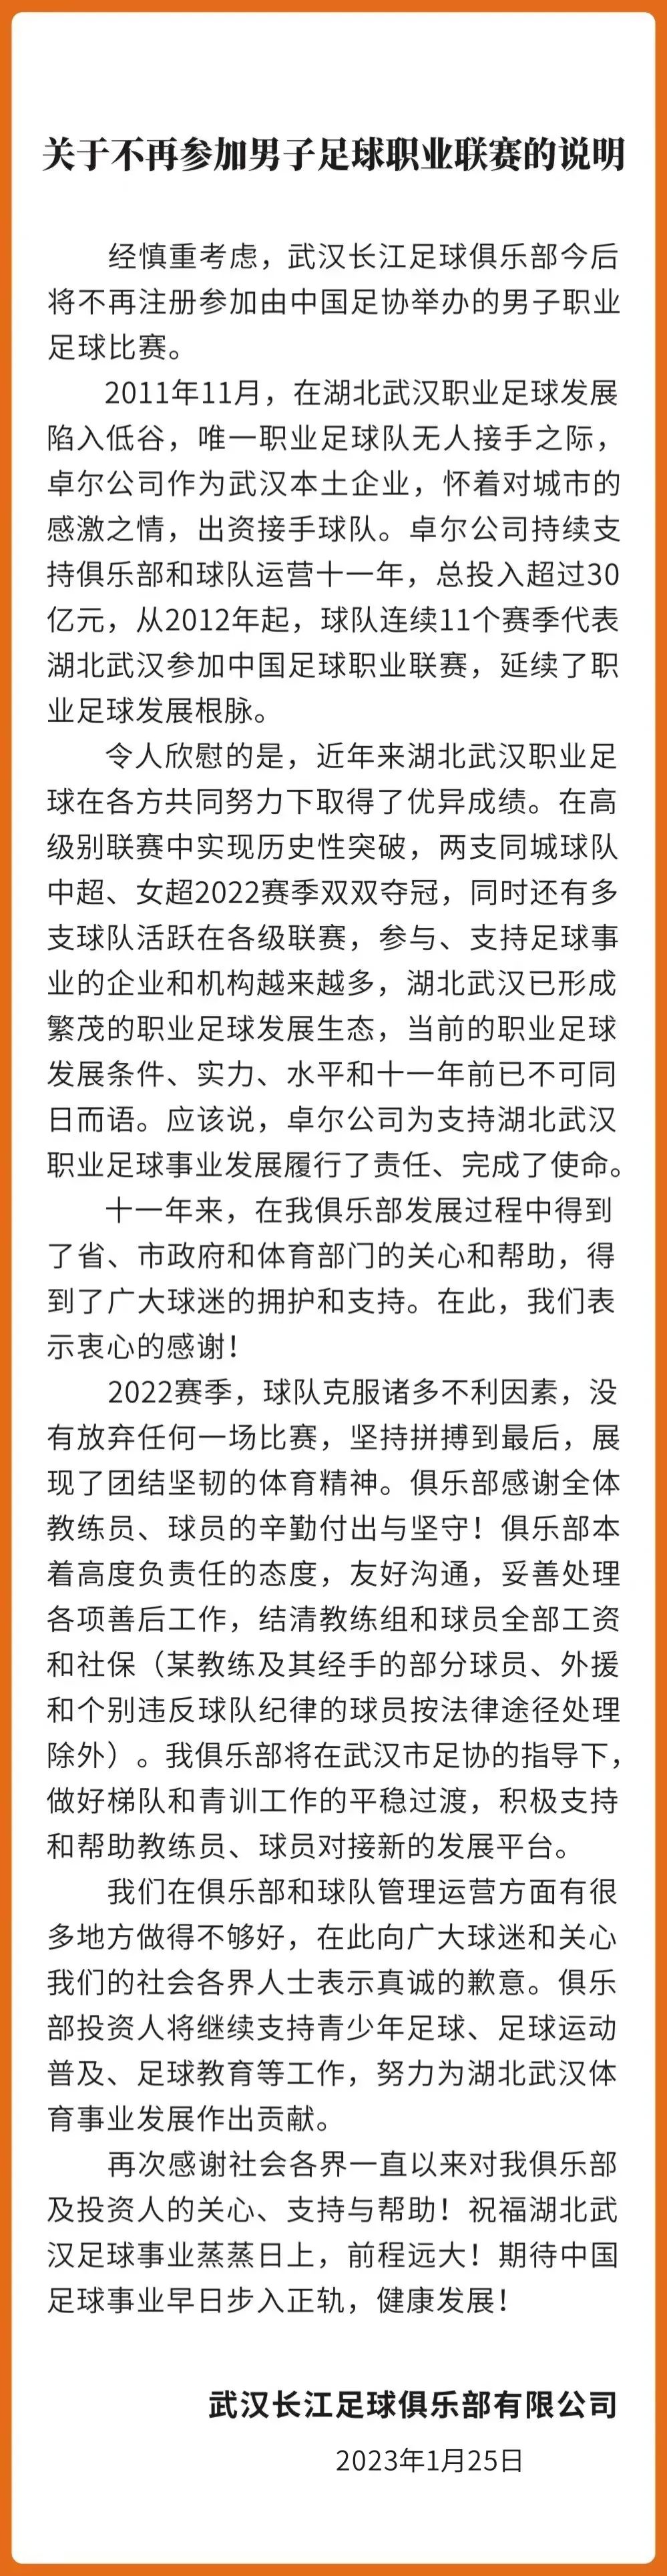 近4个赛季已有5支中超队解散：天海、江苏、重庆、武汉、广州城